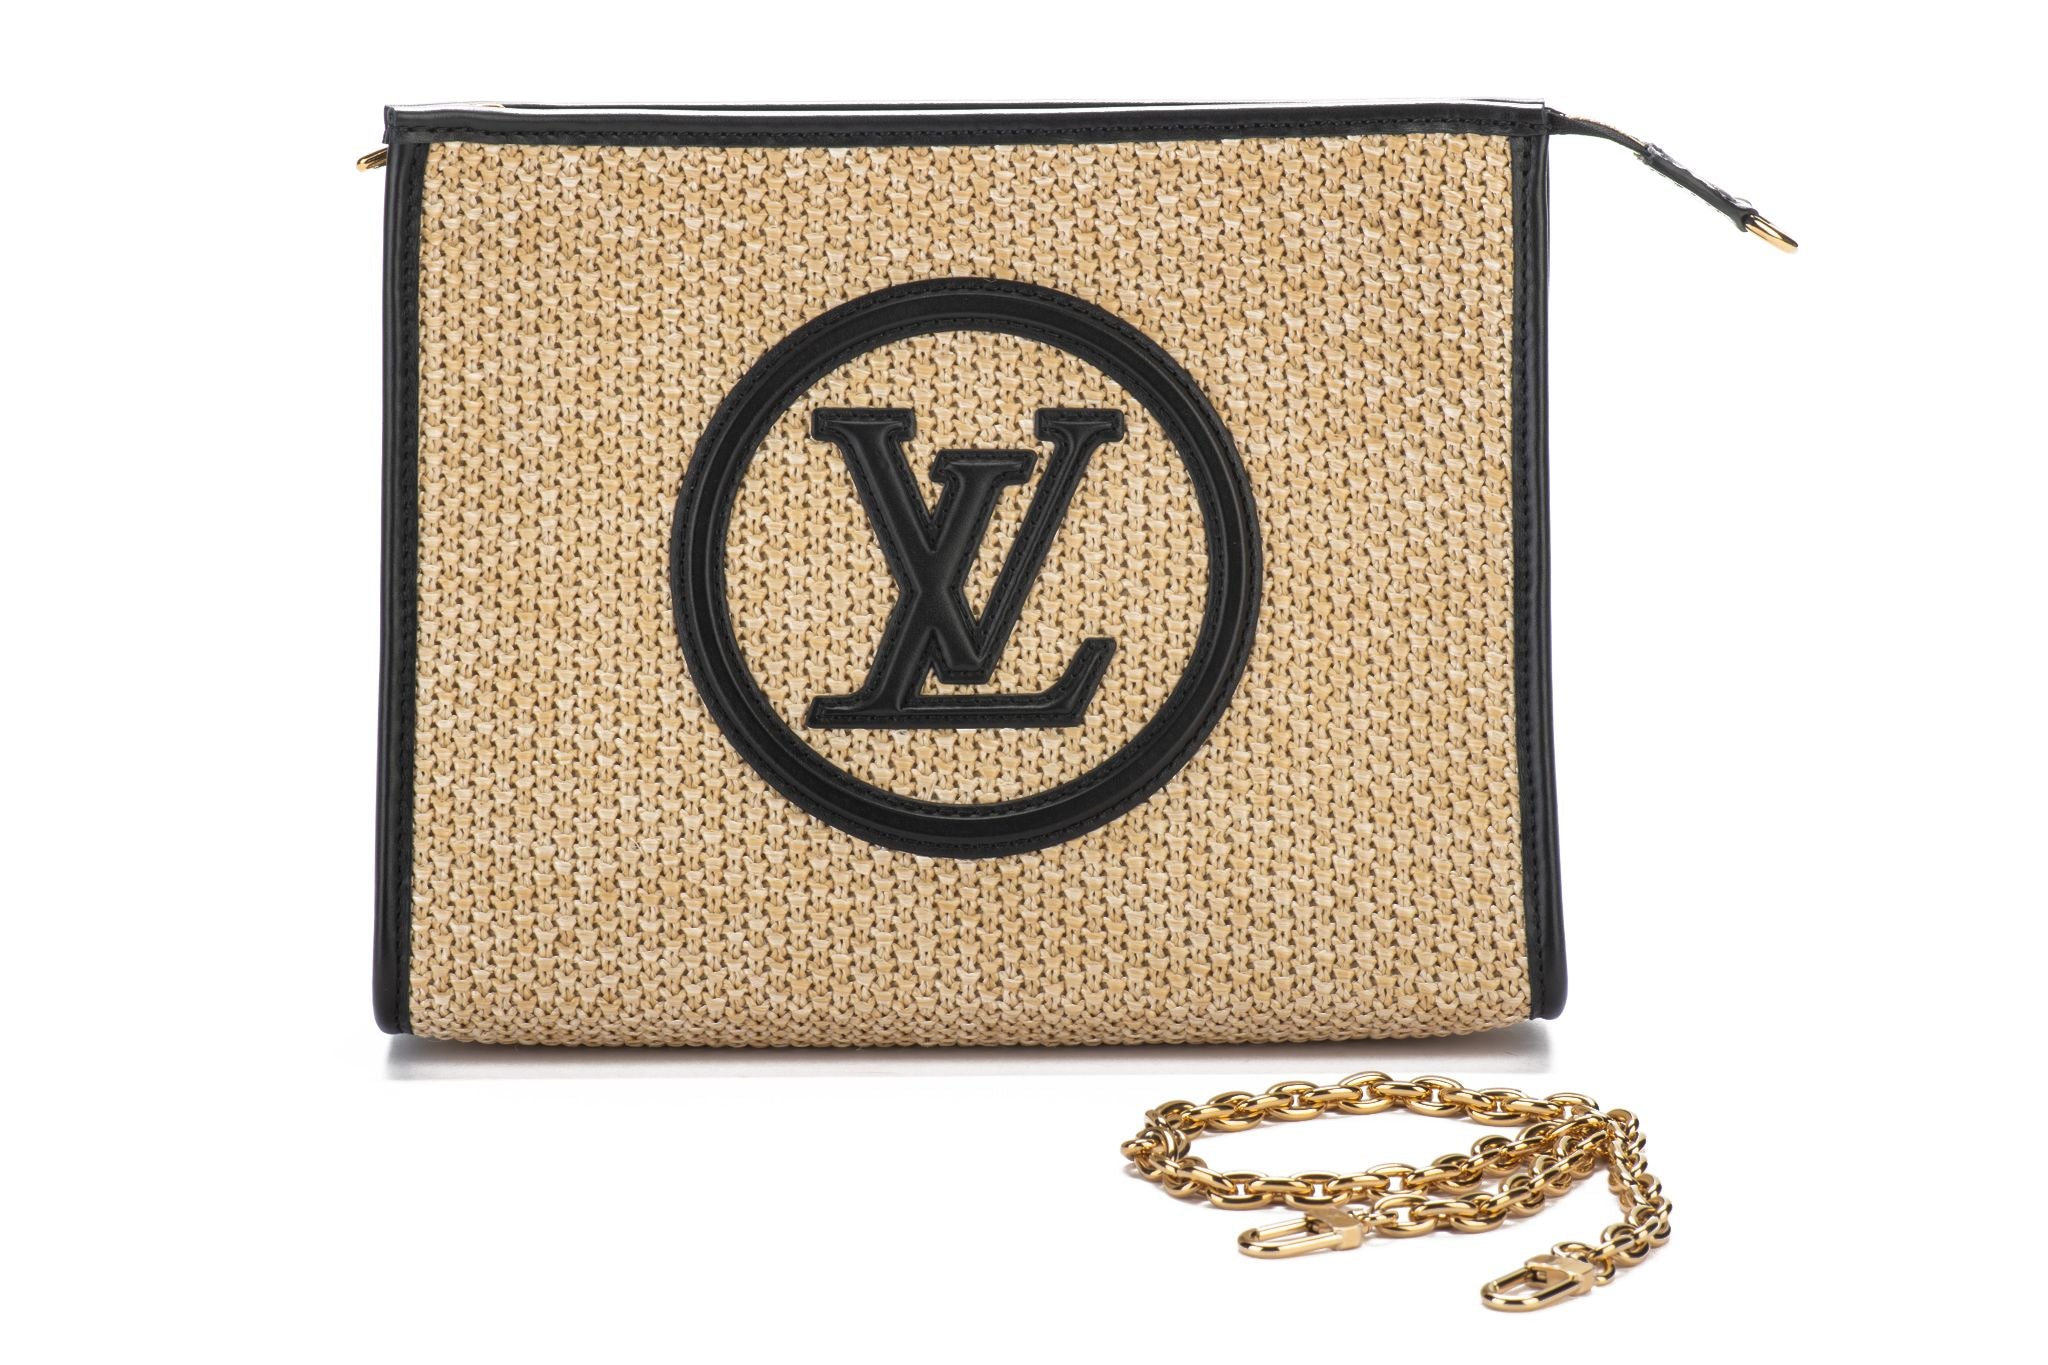 LV Gold Emblem Case